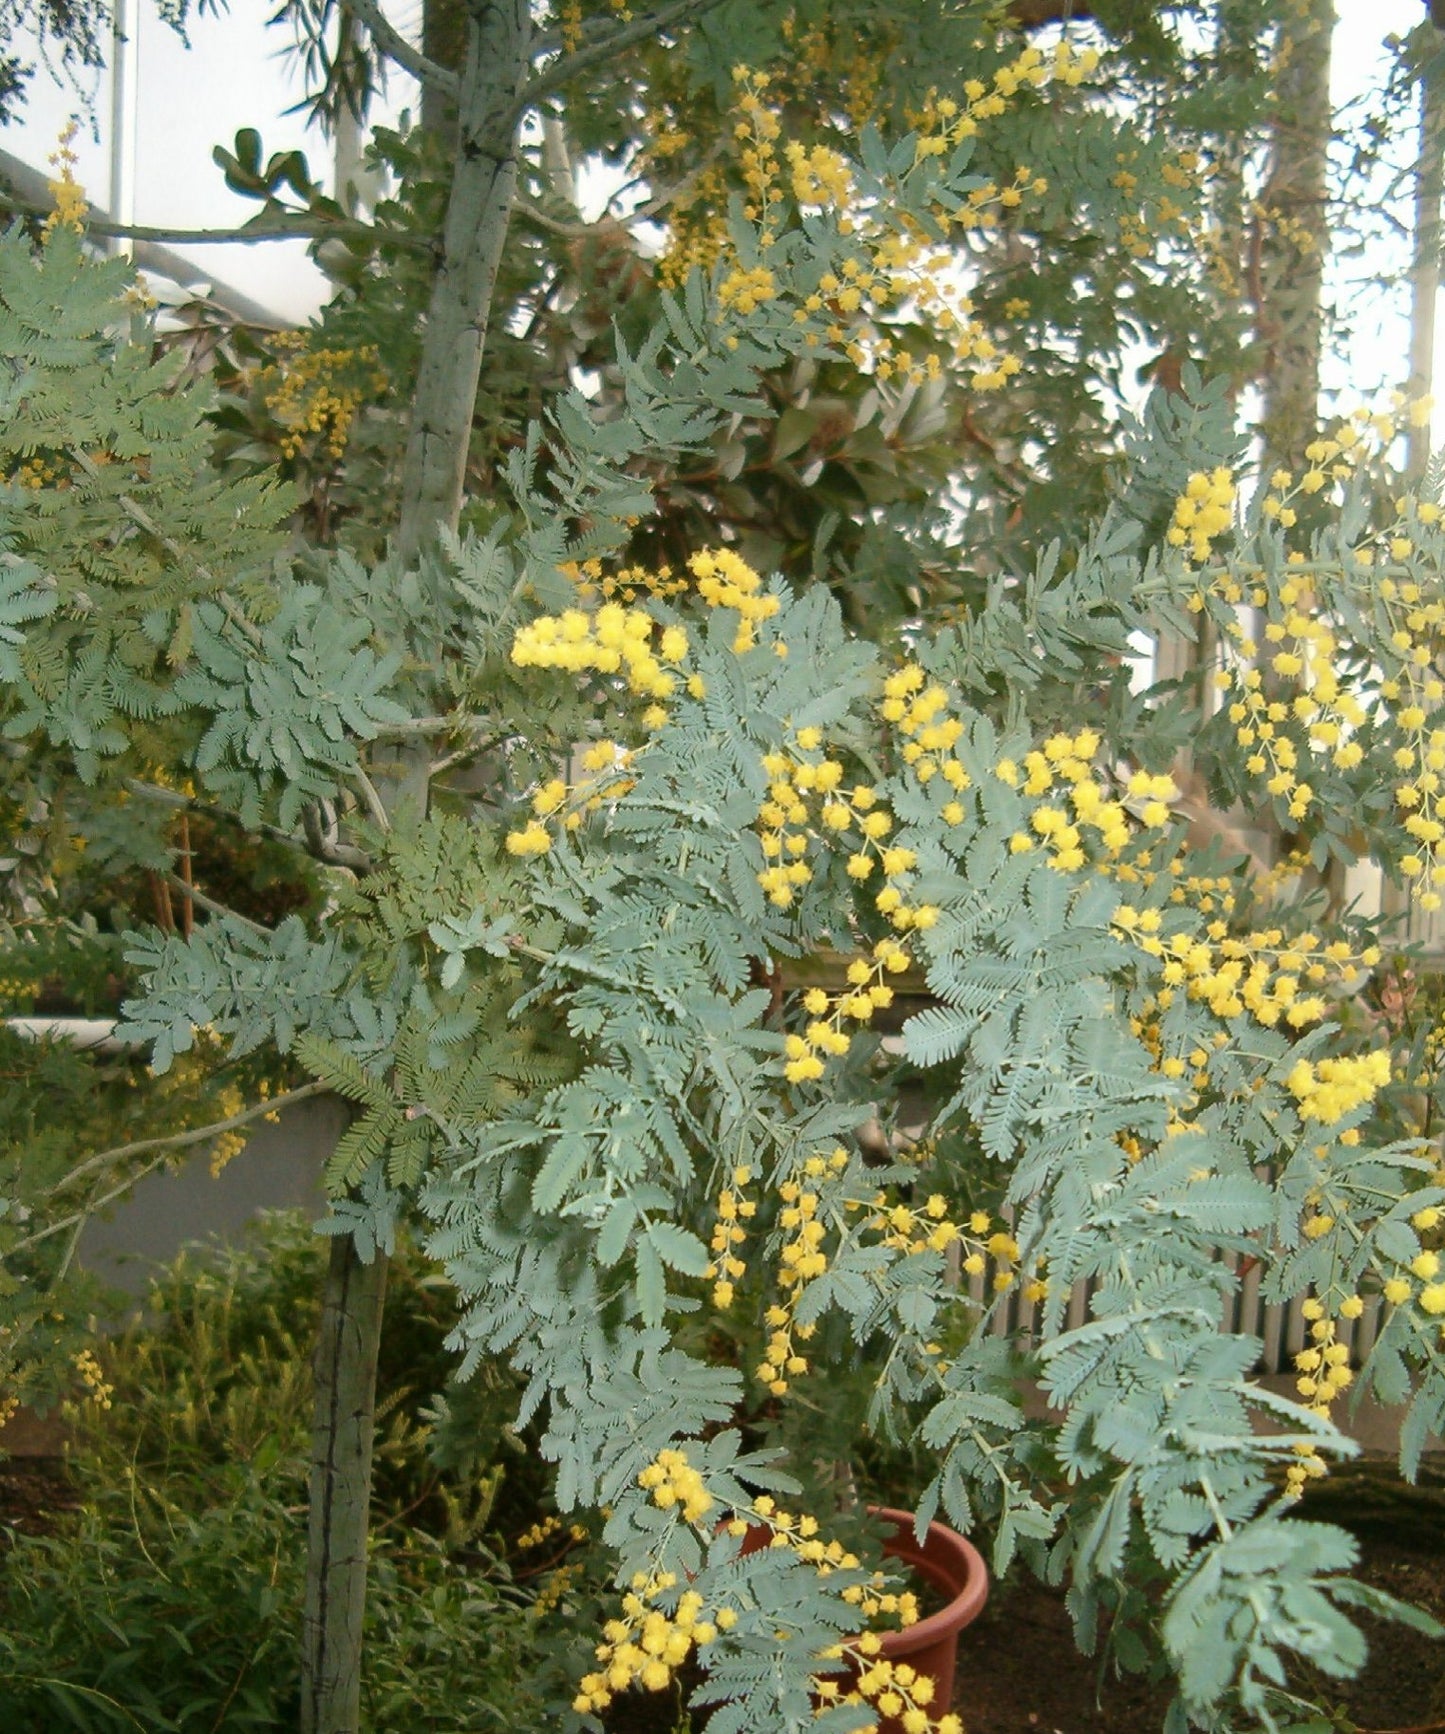 Bailey Acacia Cootamundra Wattle Golden Mimosa (Acacia baileyana)